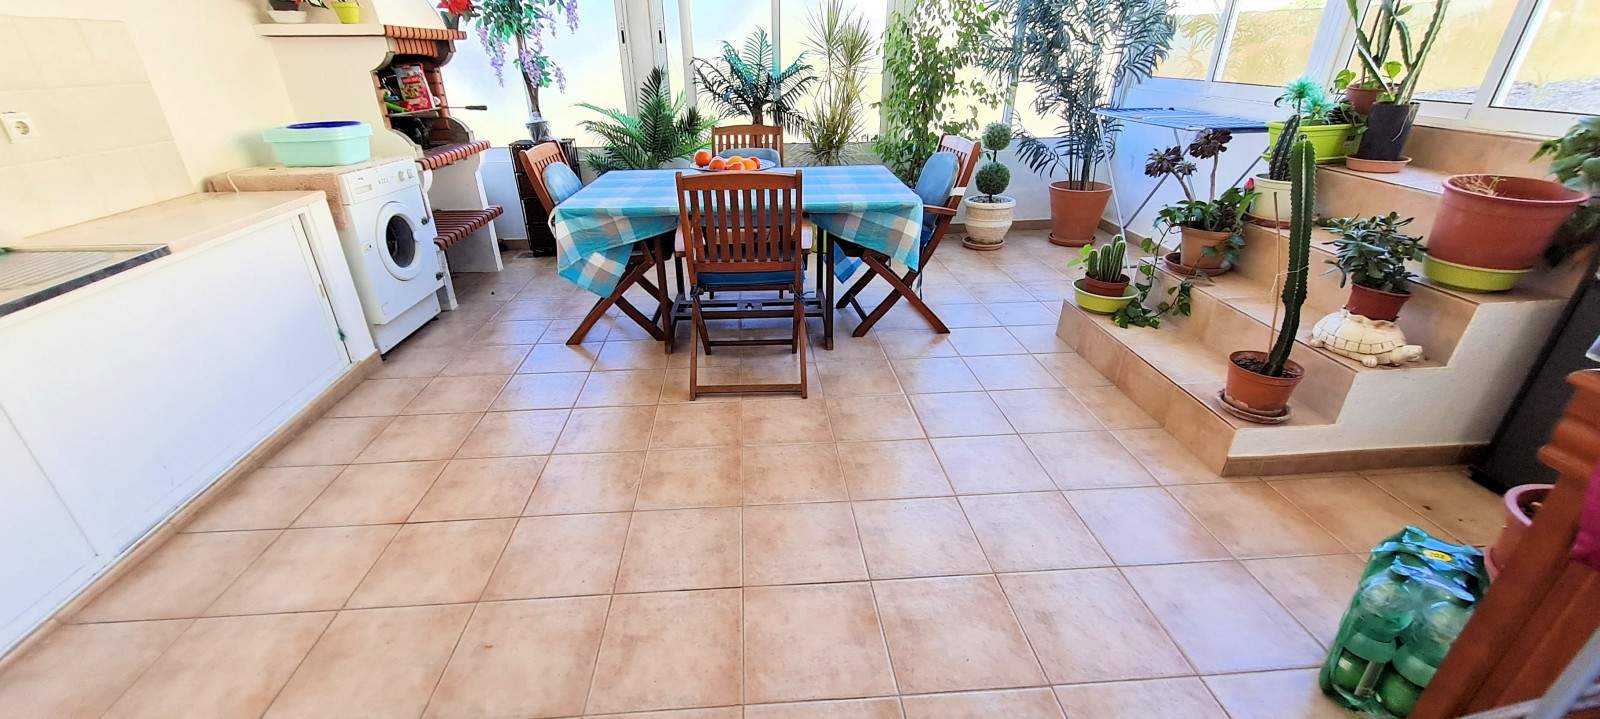 2 bedroom villa with garden, for sale, in São Brás de Alportel, Algarve_203401